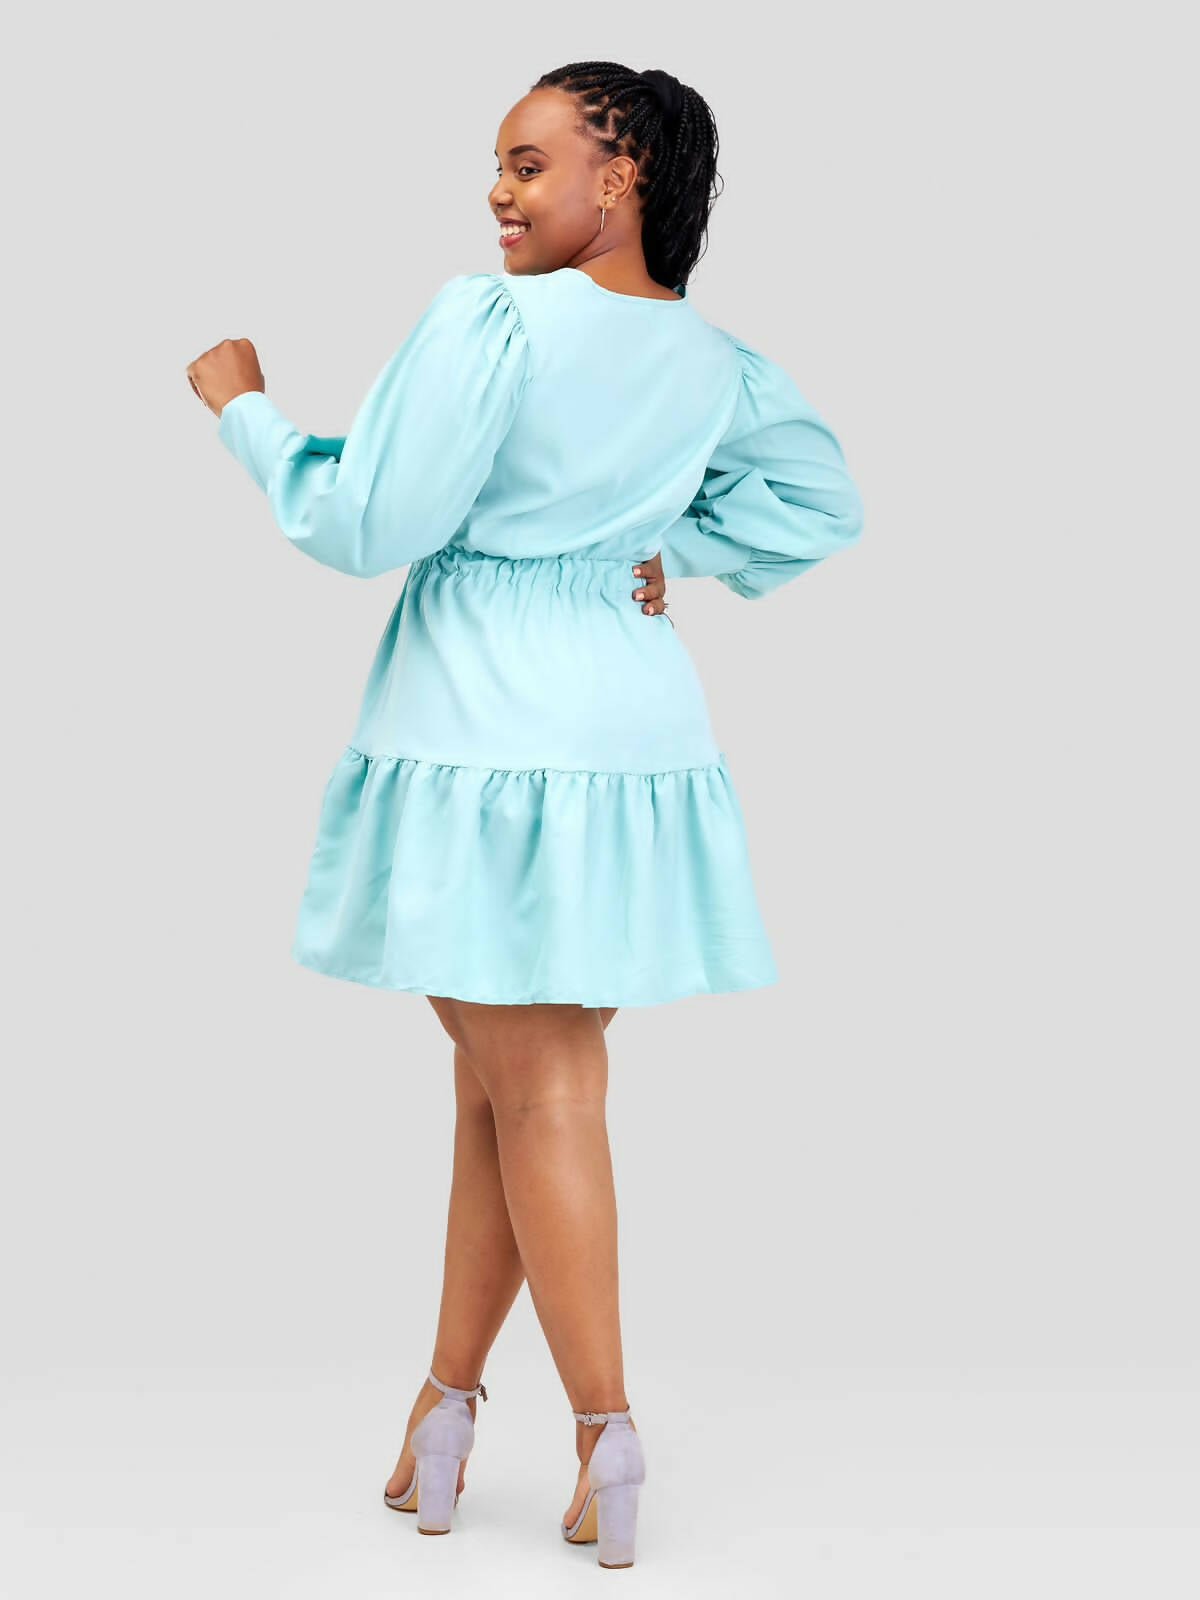 Stylish Sisters/Short and Mini Dress - Turquoise Blue - Shopzetu